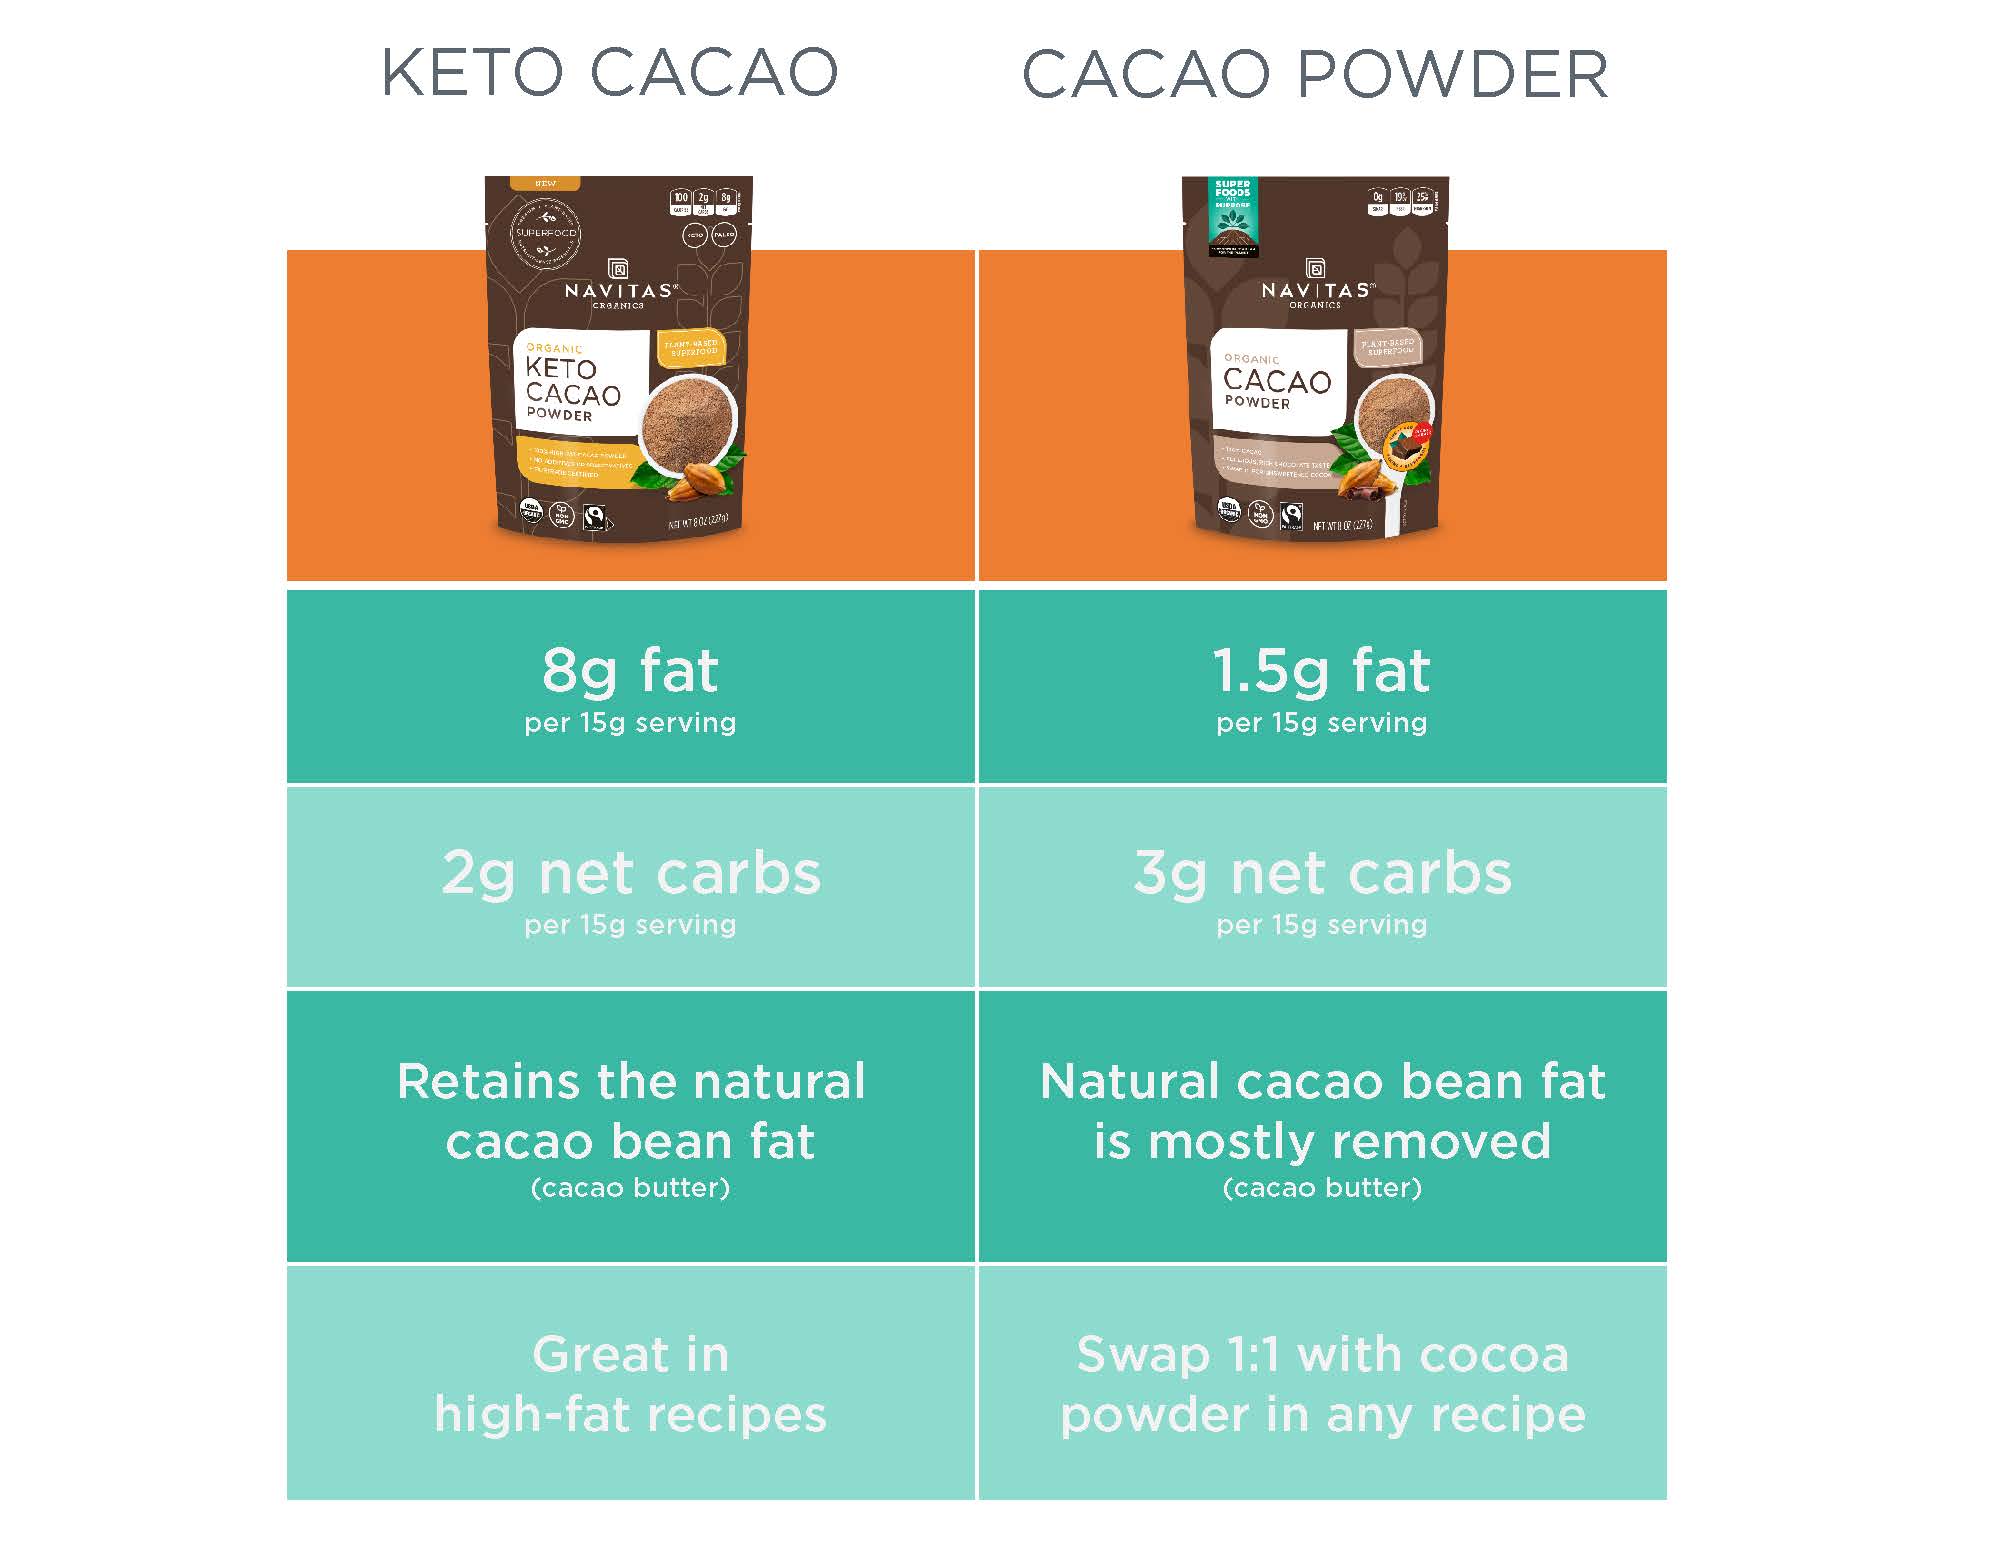 Keto_Cacao_vs_Cacao_Powder_infographic.jpg